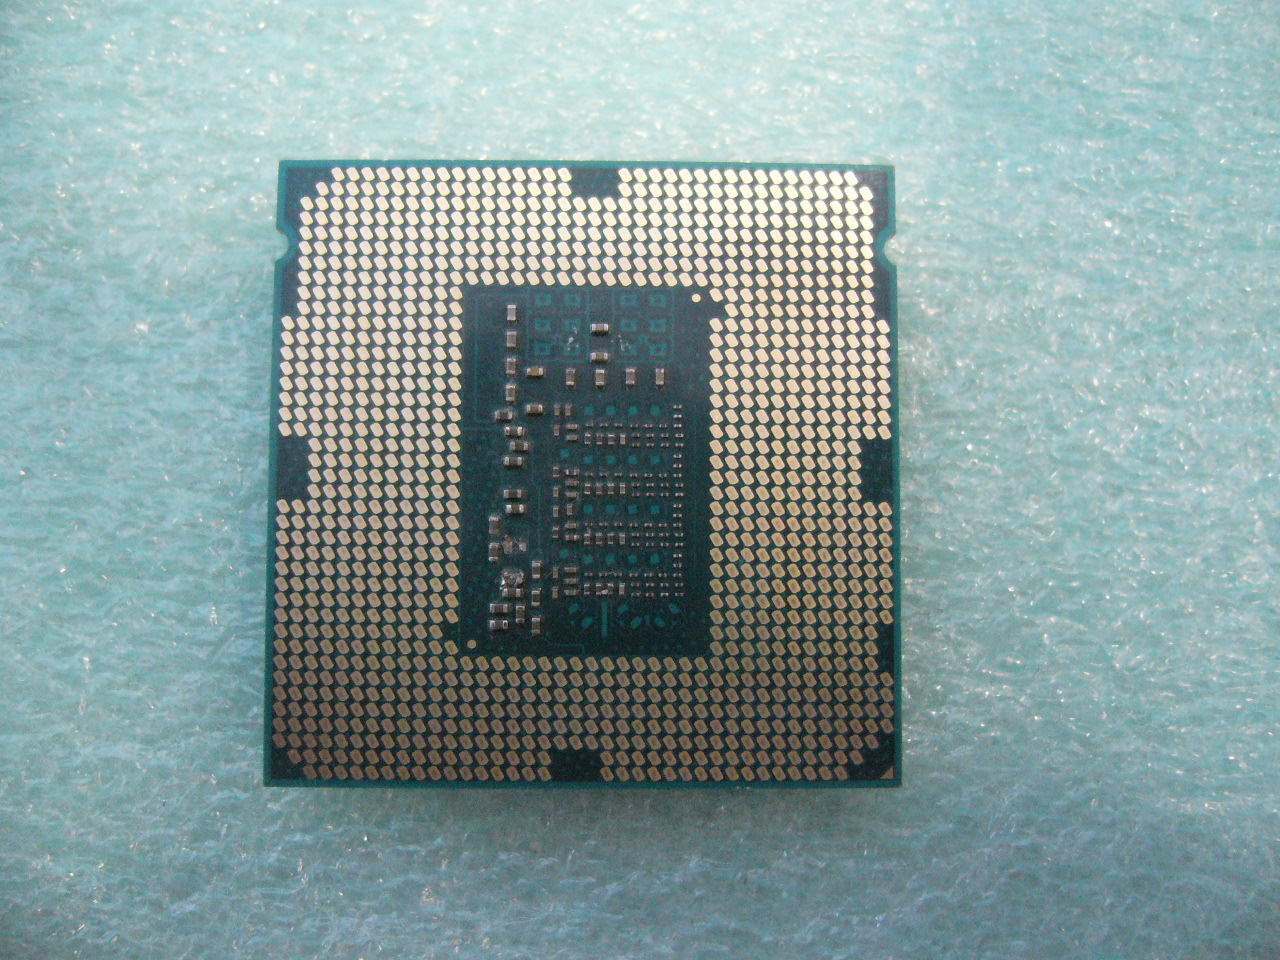 QTY 1x Intel CPU i5-4590T Quad-Cores 2.0Ghz LGA1150 SR1S6 NOT WORKING - zum Schließen ins Bild klicken